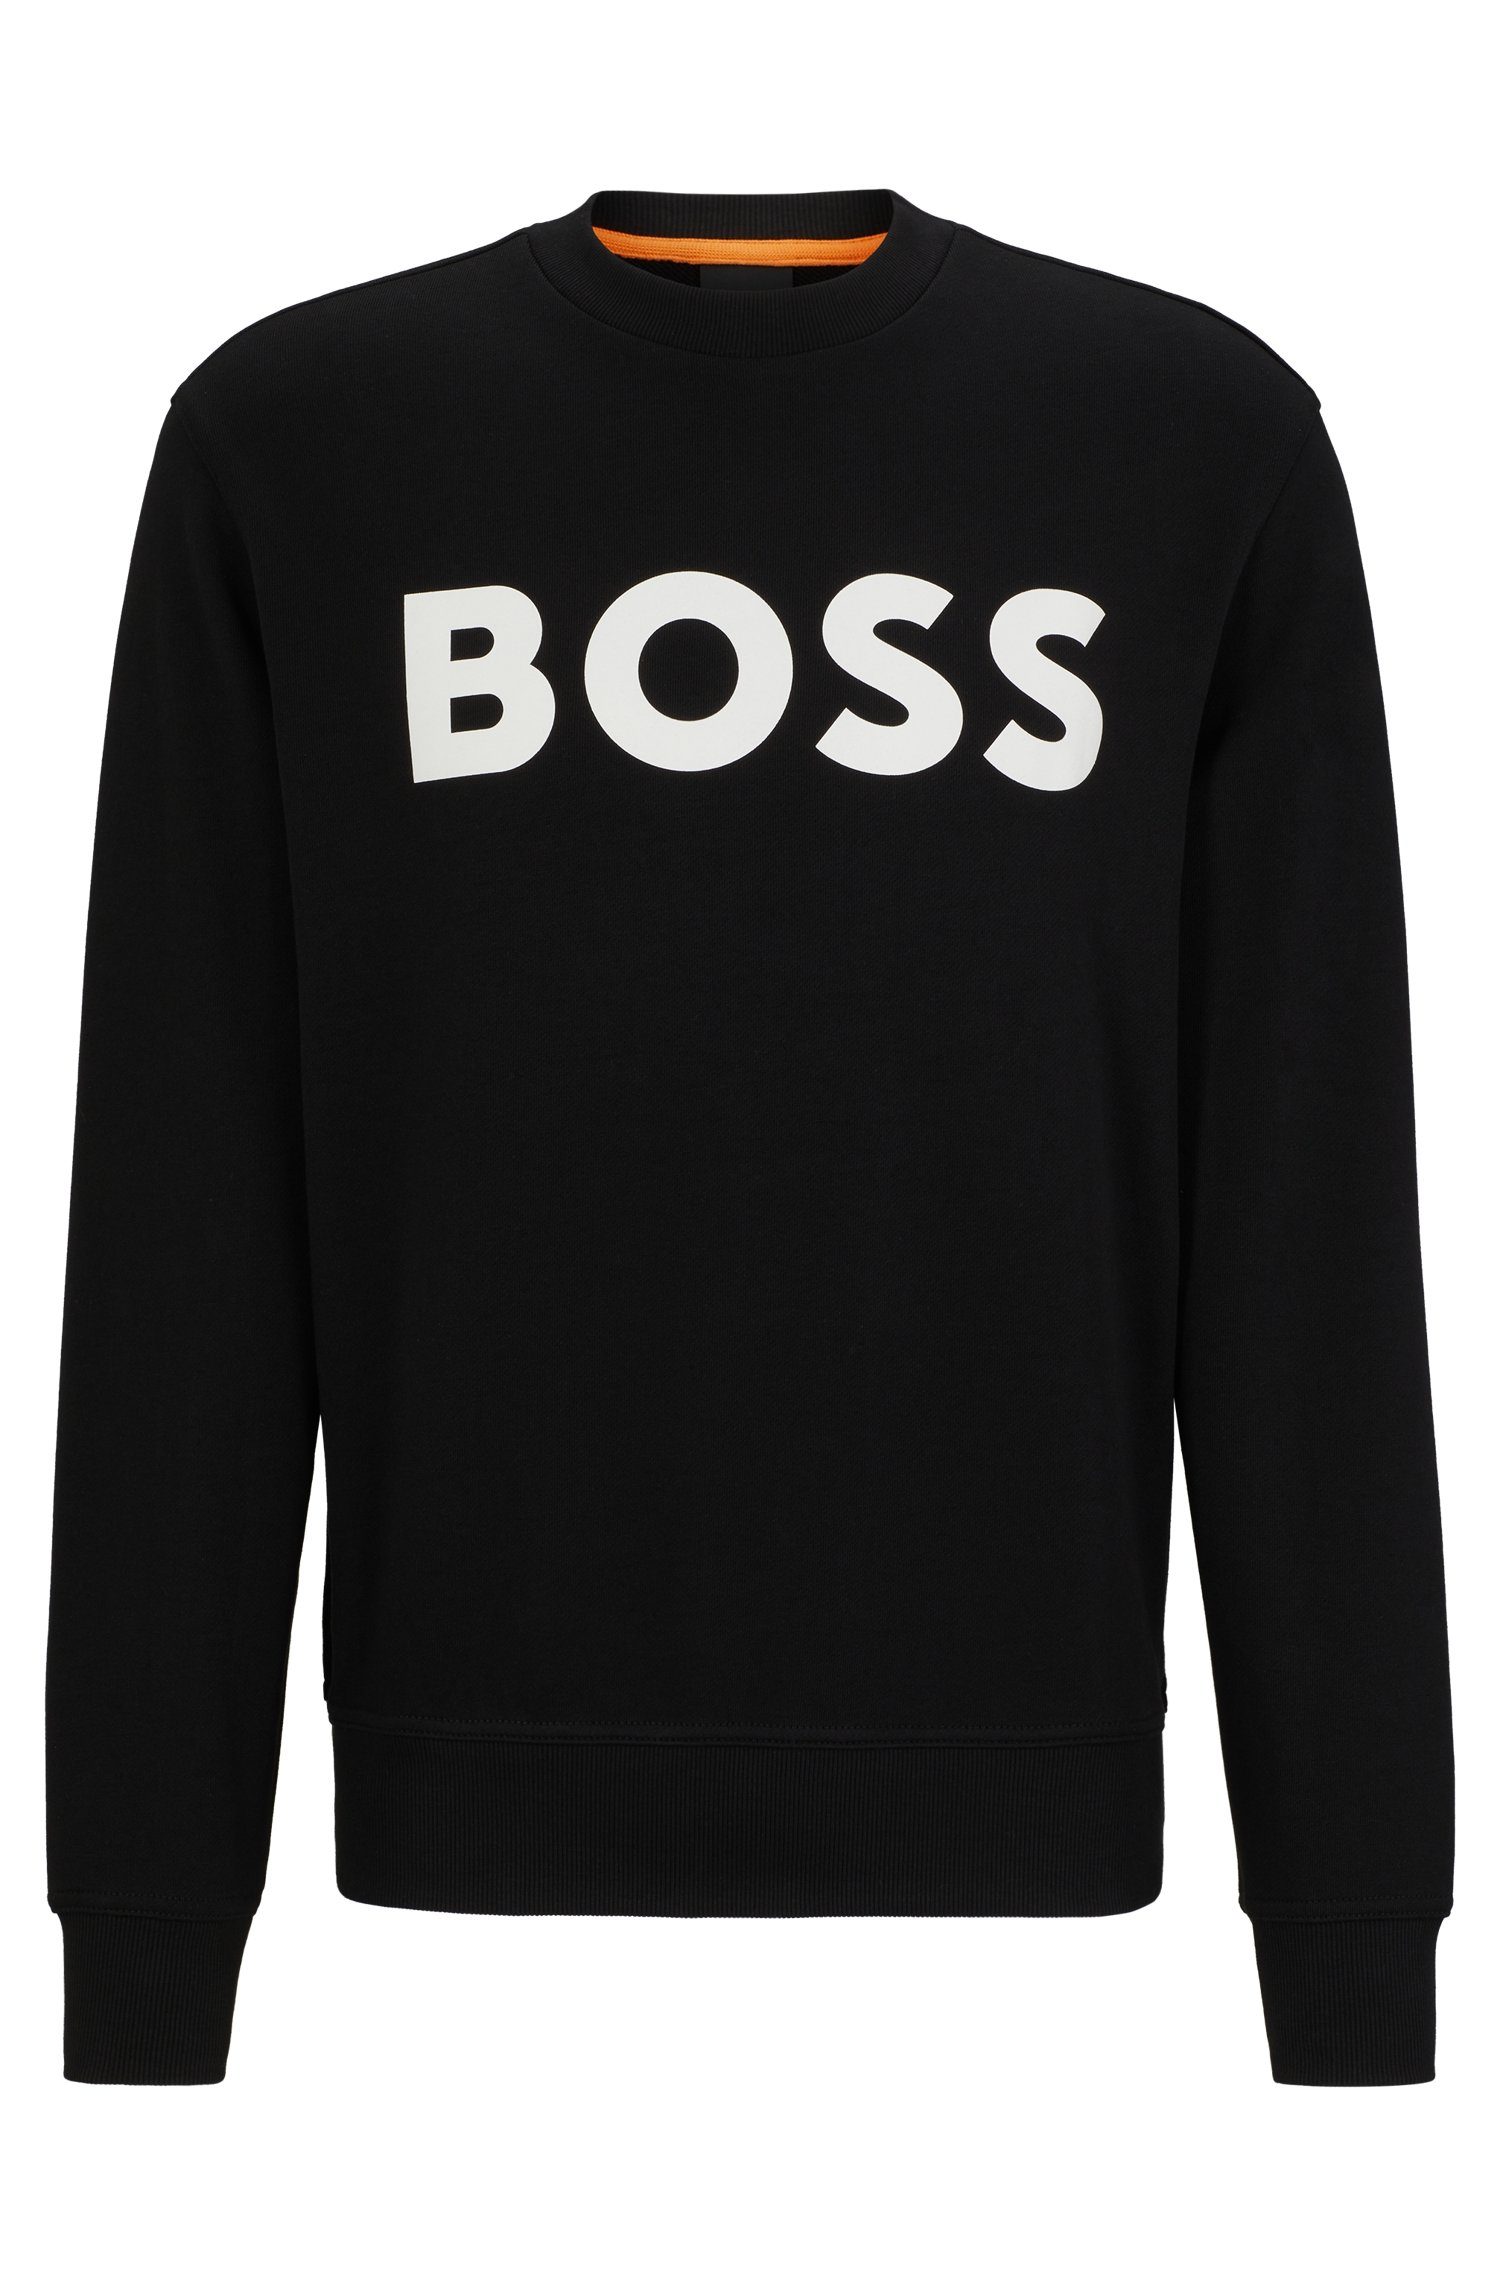 WeBasicCrew BOSS mit Rundhalsausschnitt ORANGE Sweatshirt schwarz